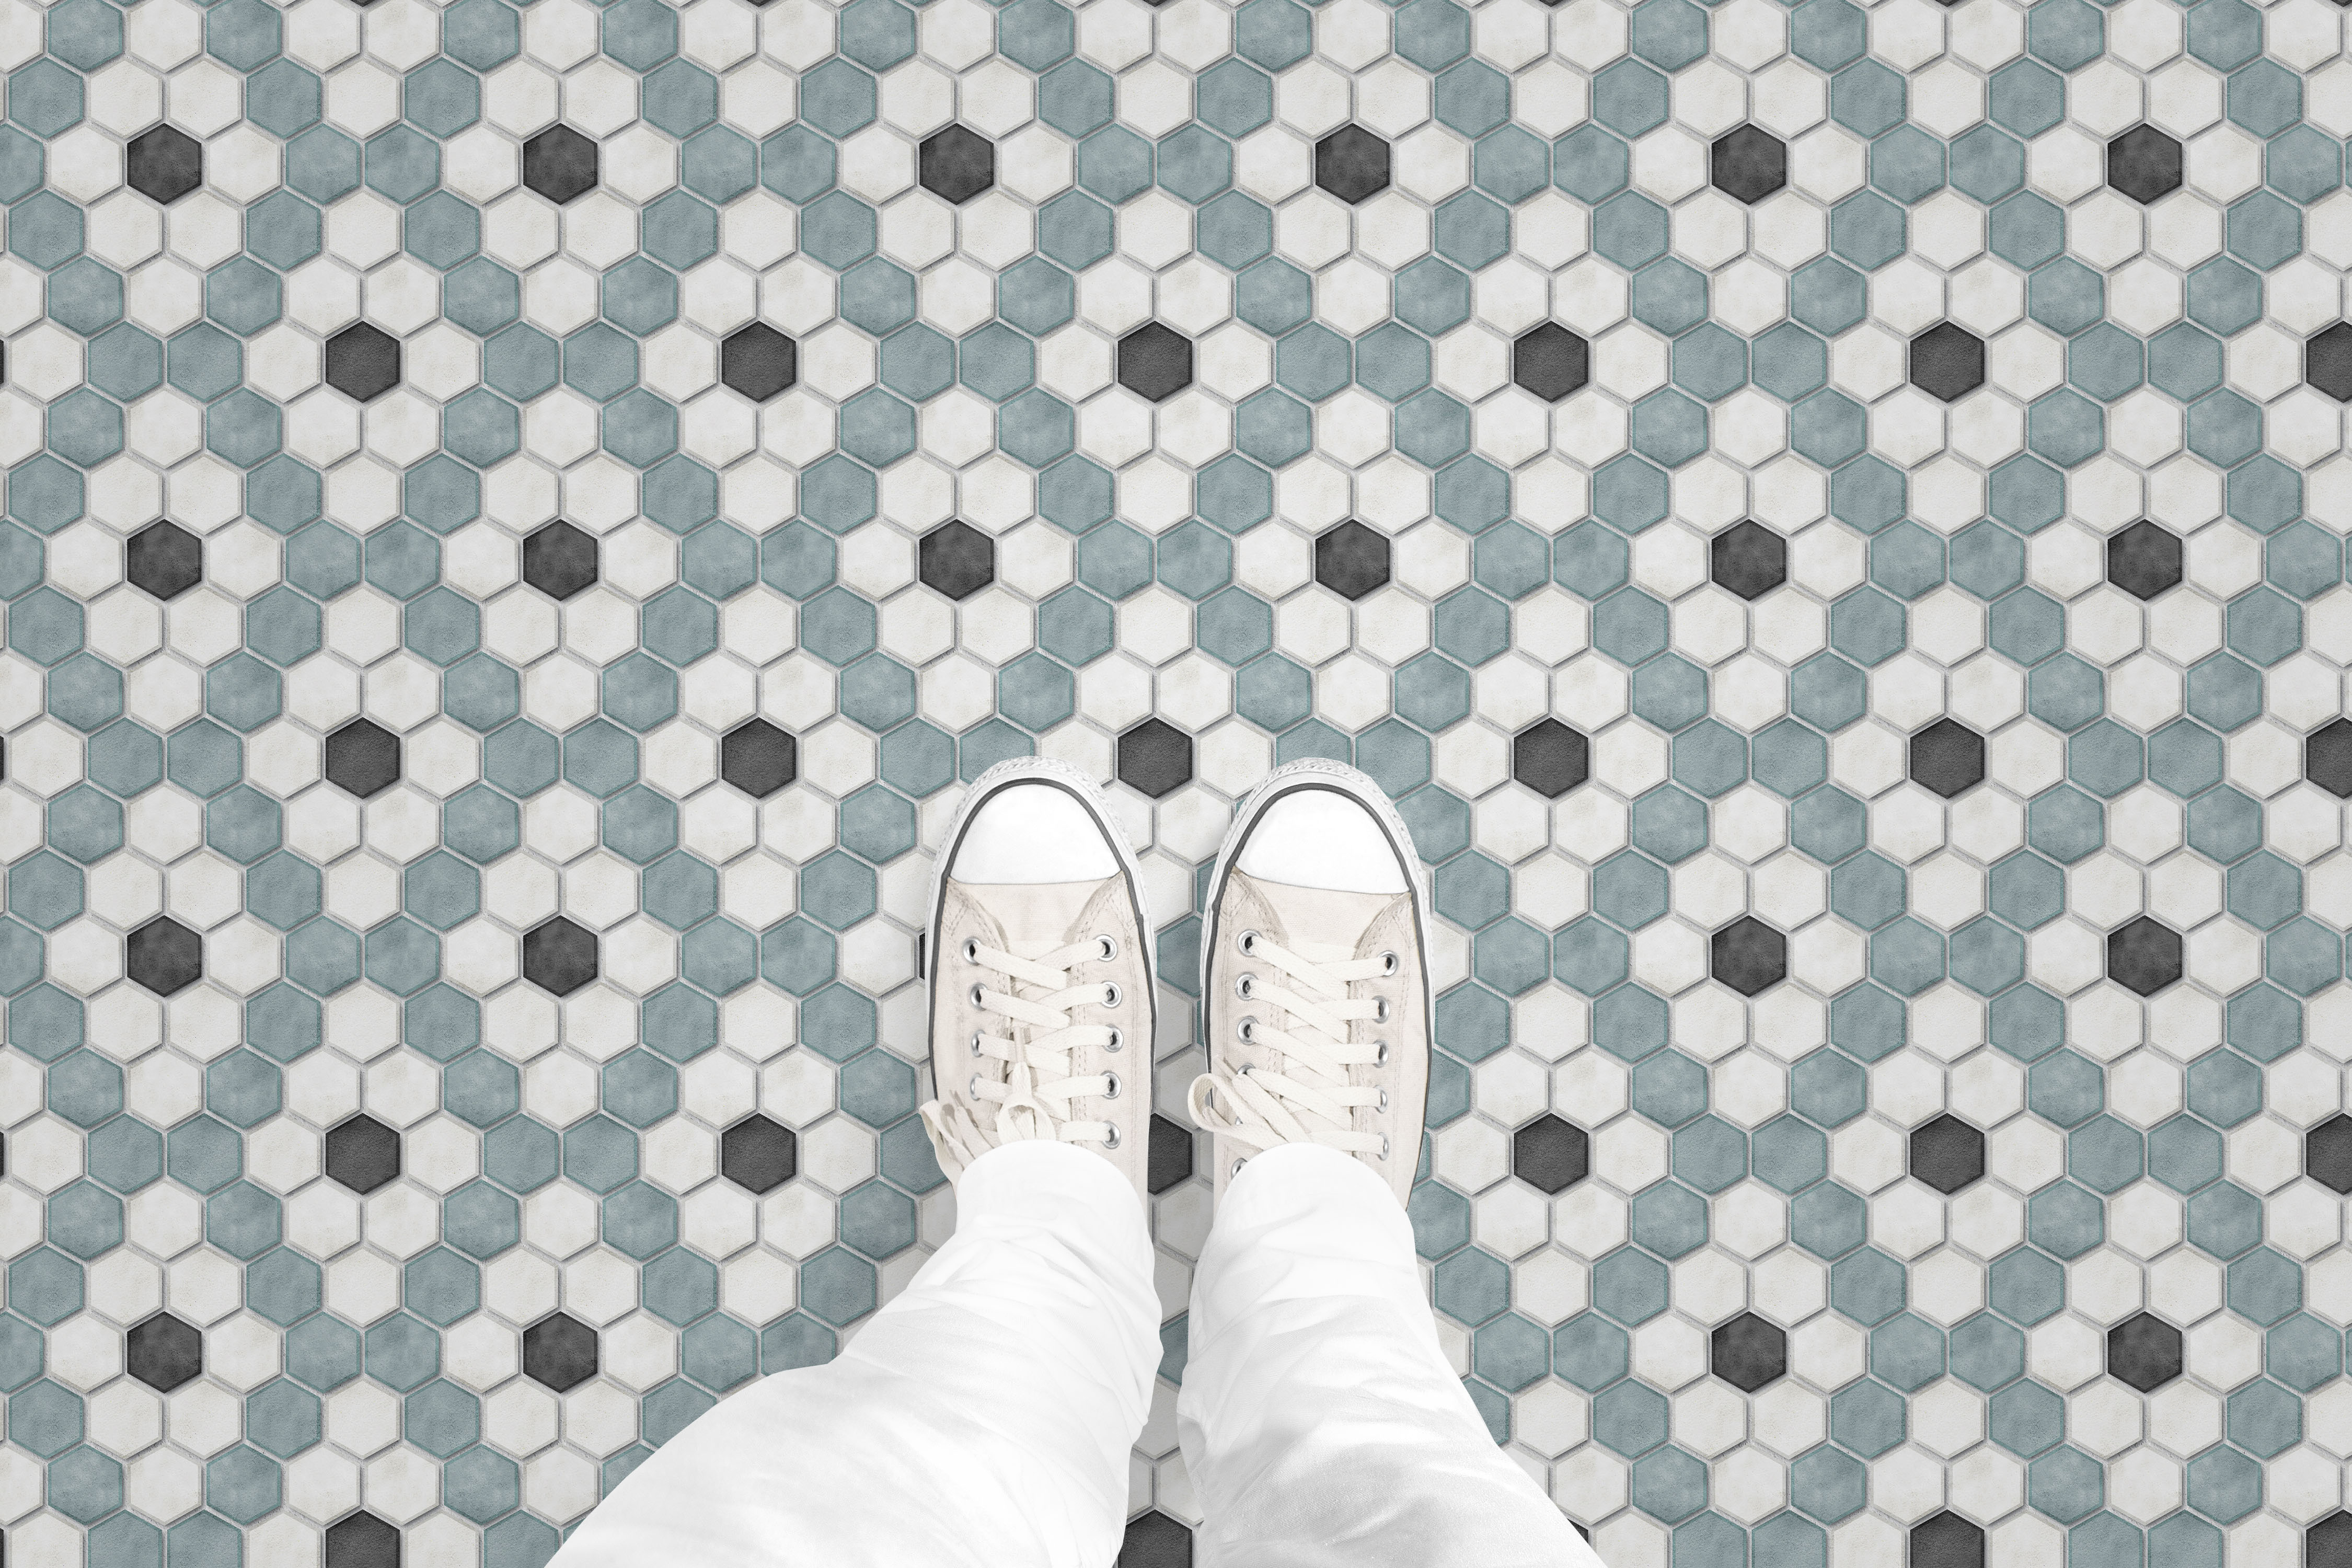 Hexagon Diamond Dot Tile floor_feet_shop.gif_p2237a1.jpg